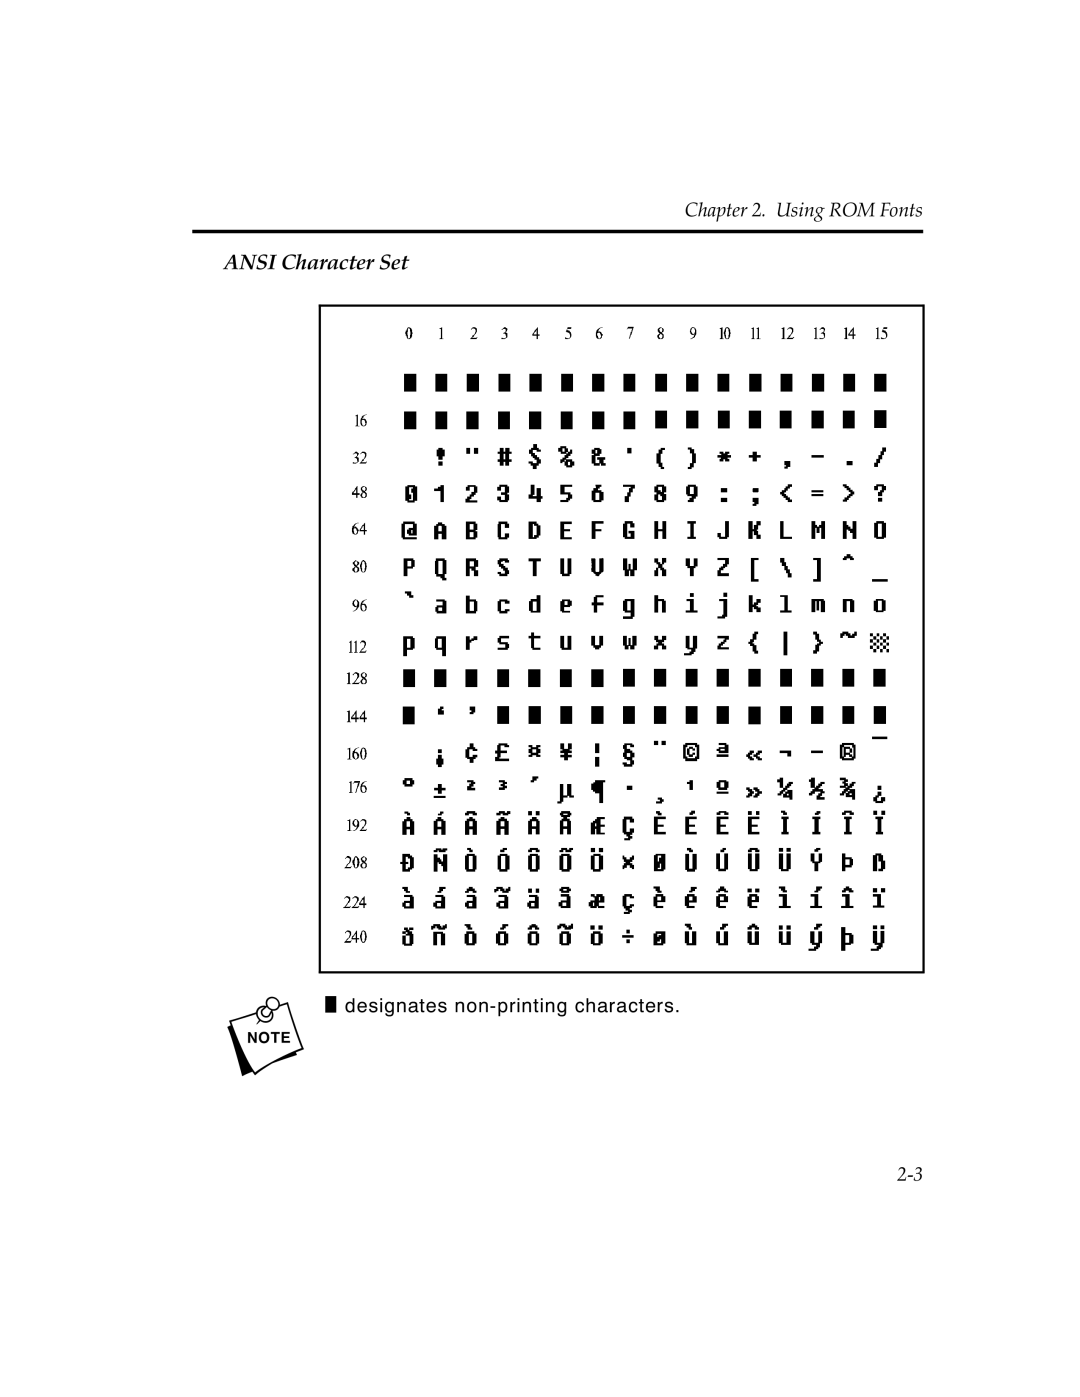 Paxar MPCL II manual ANSI Character Set, Using ROM Fonts, n designates non-printing characters 